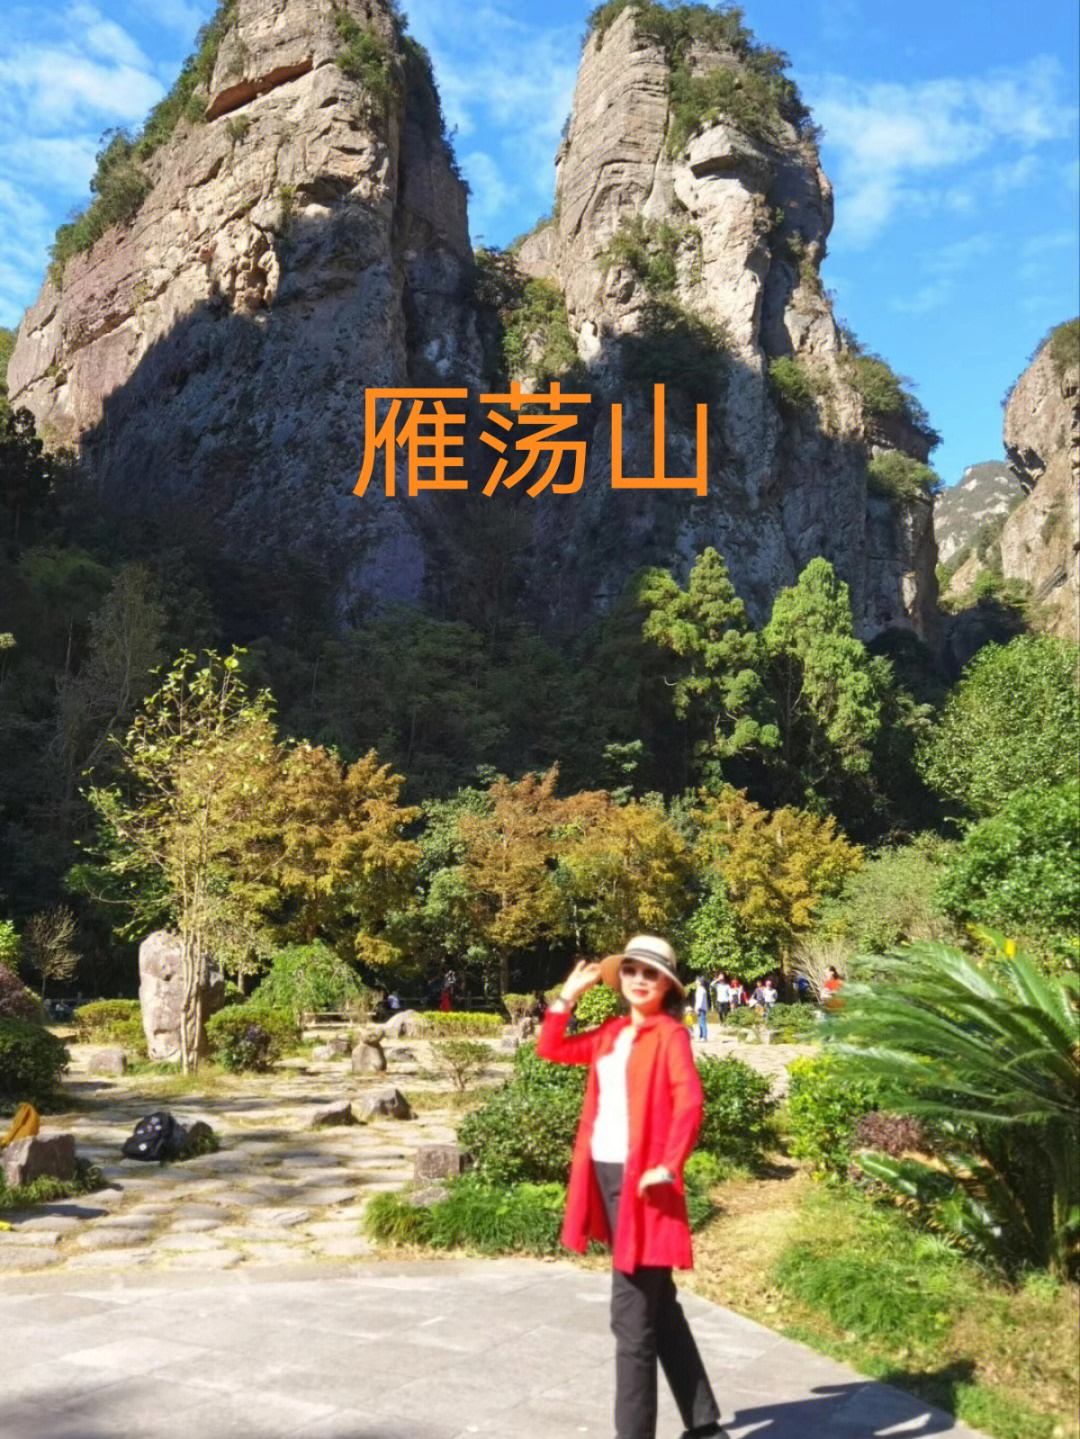 雁荡山坐落于浙江省温州市,国家重点风景名胜区,首批五a级景区,是中国